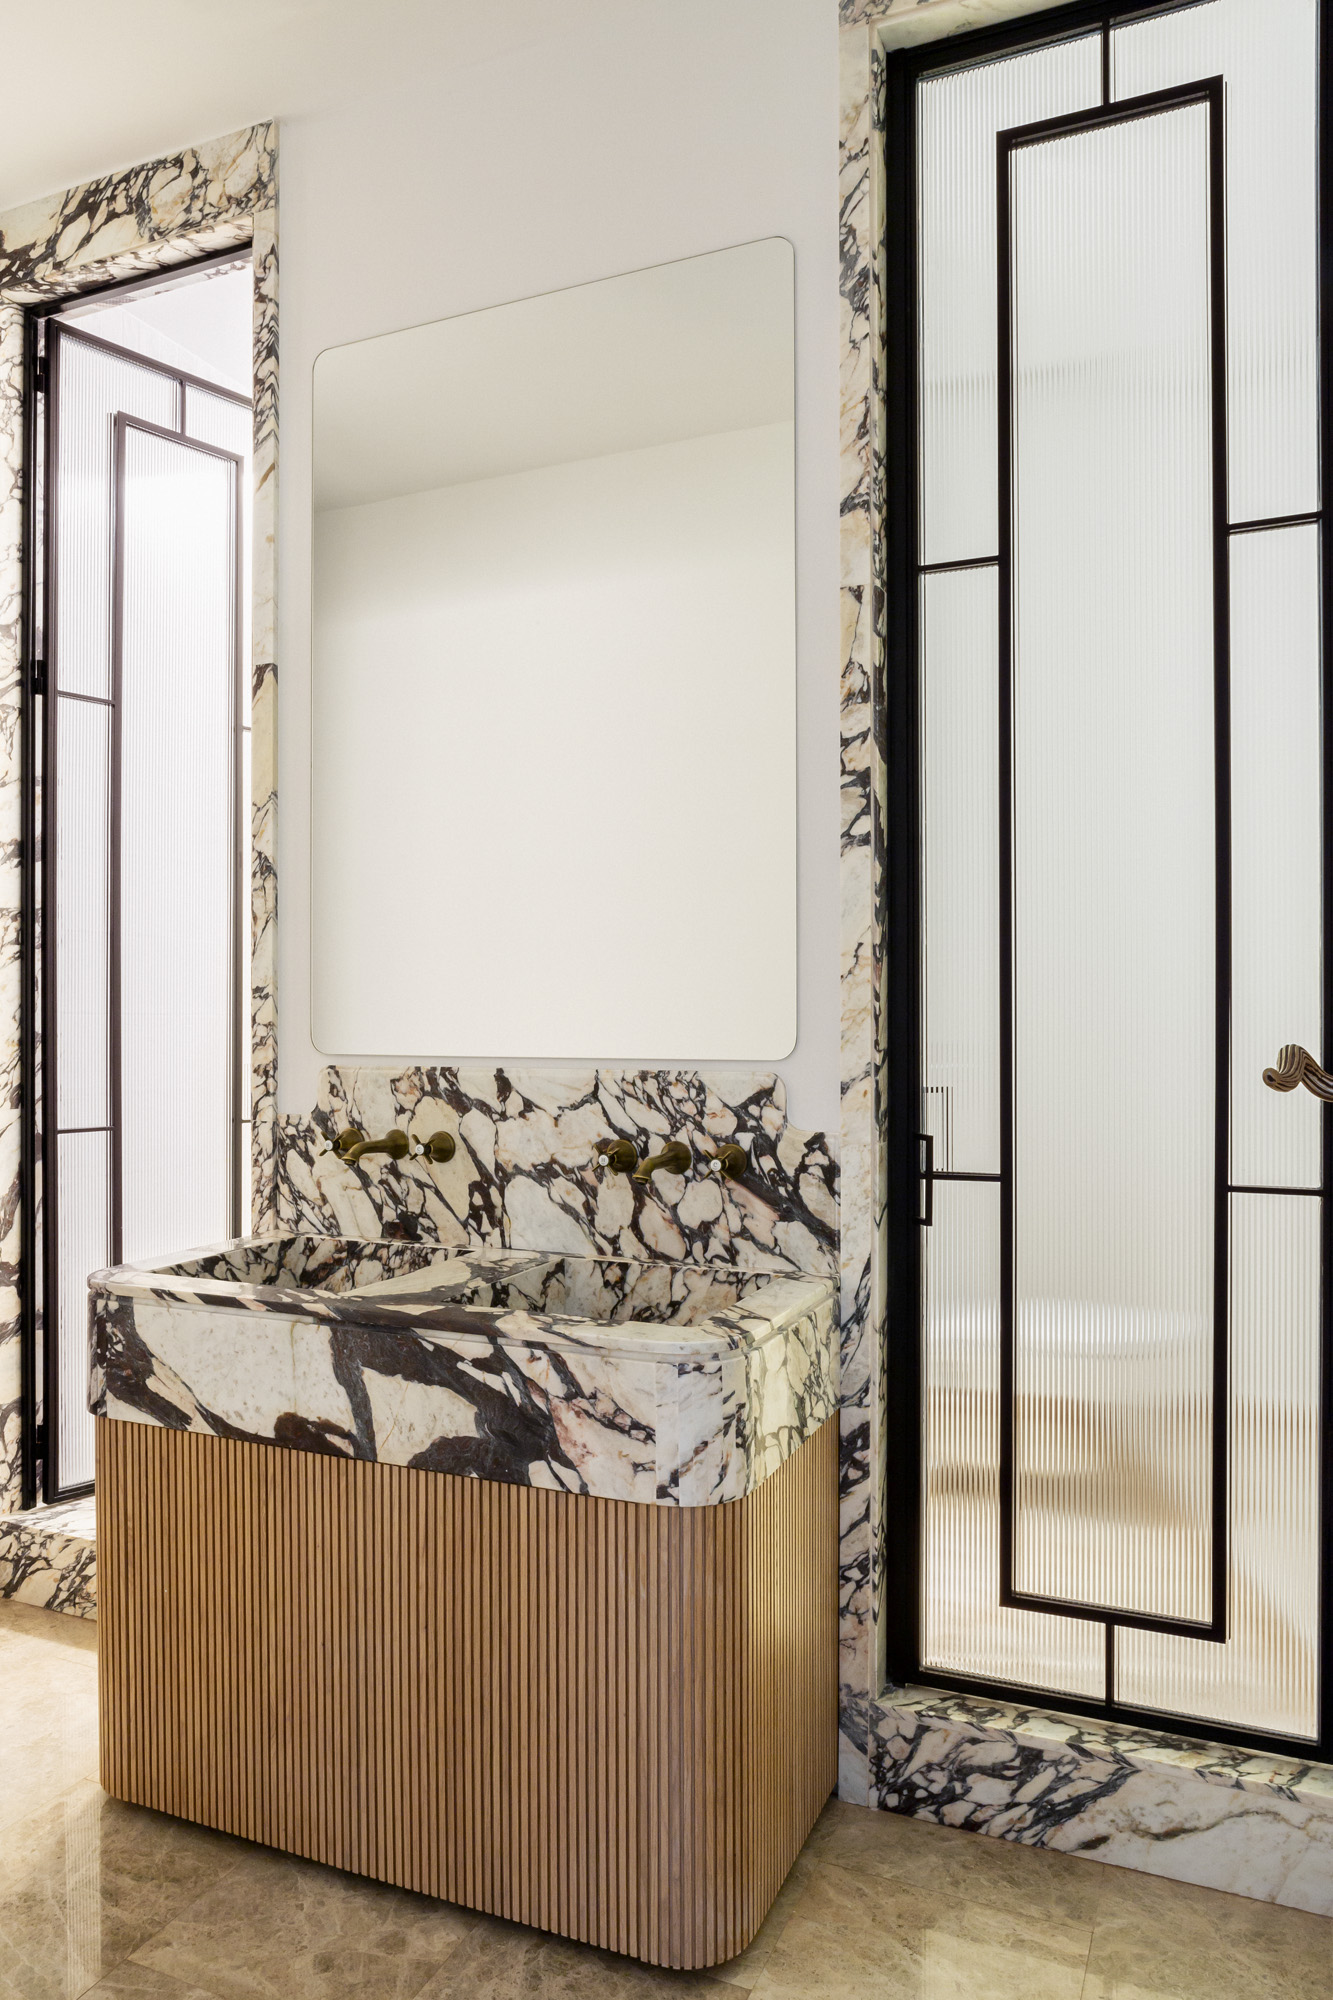 Reforma de baño principal con suelos de mármol ambarino, embocaduras de puertas en piedra Calacatta Viola, mueble en roble y encimera en piedra